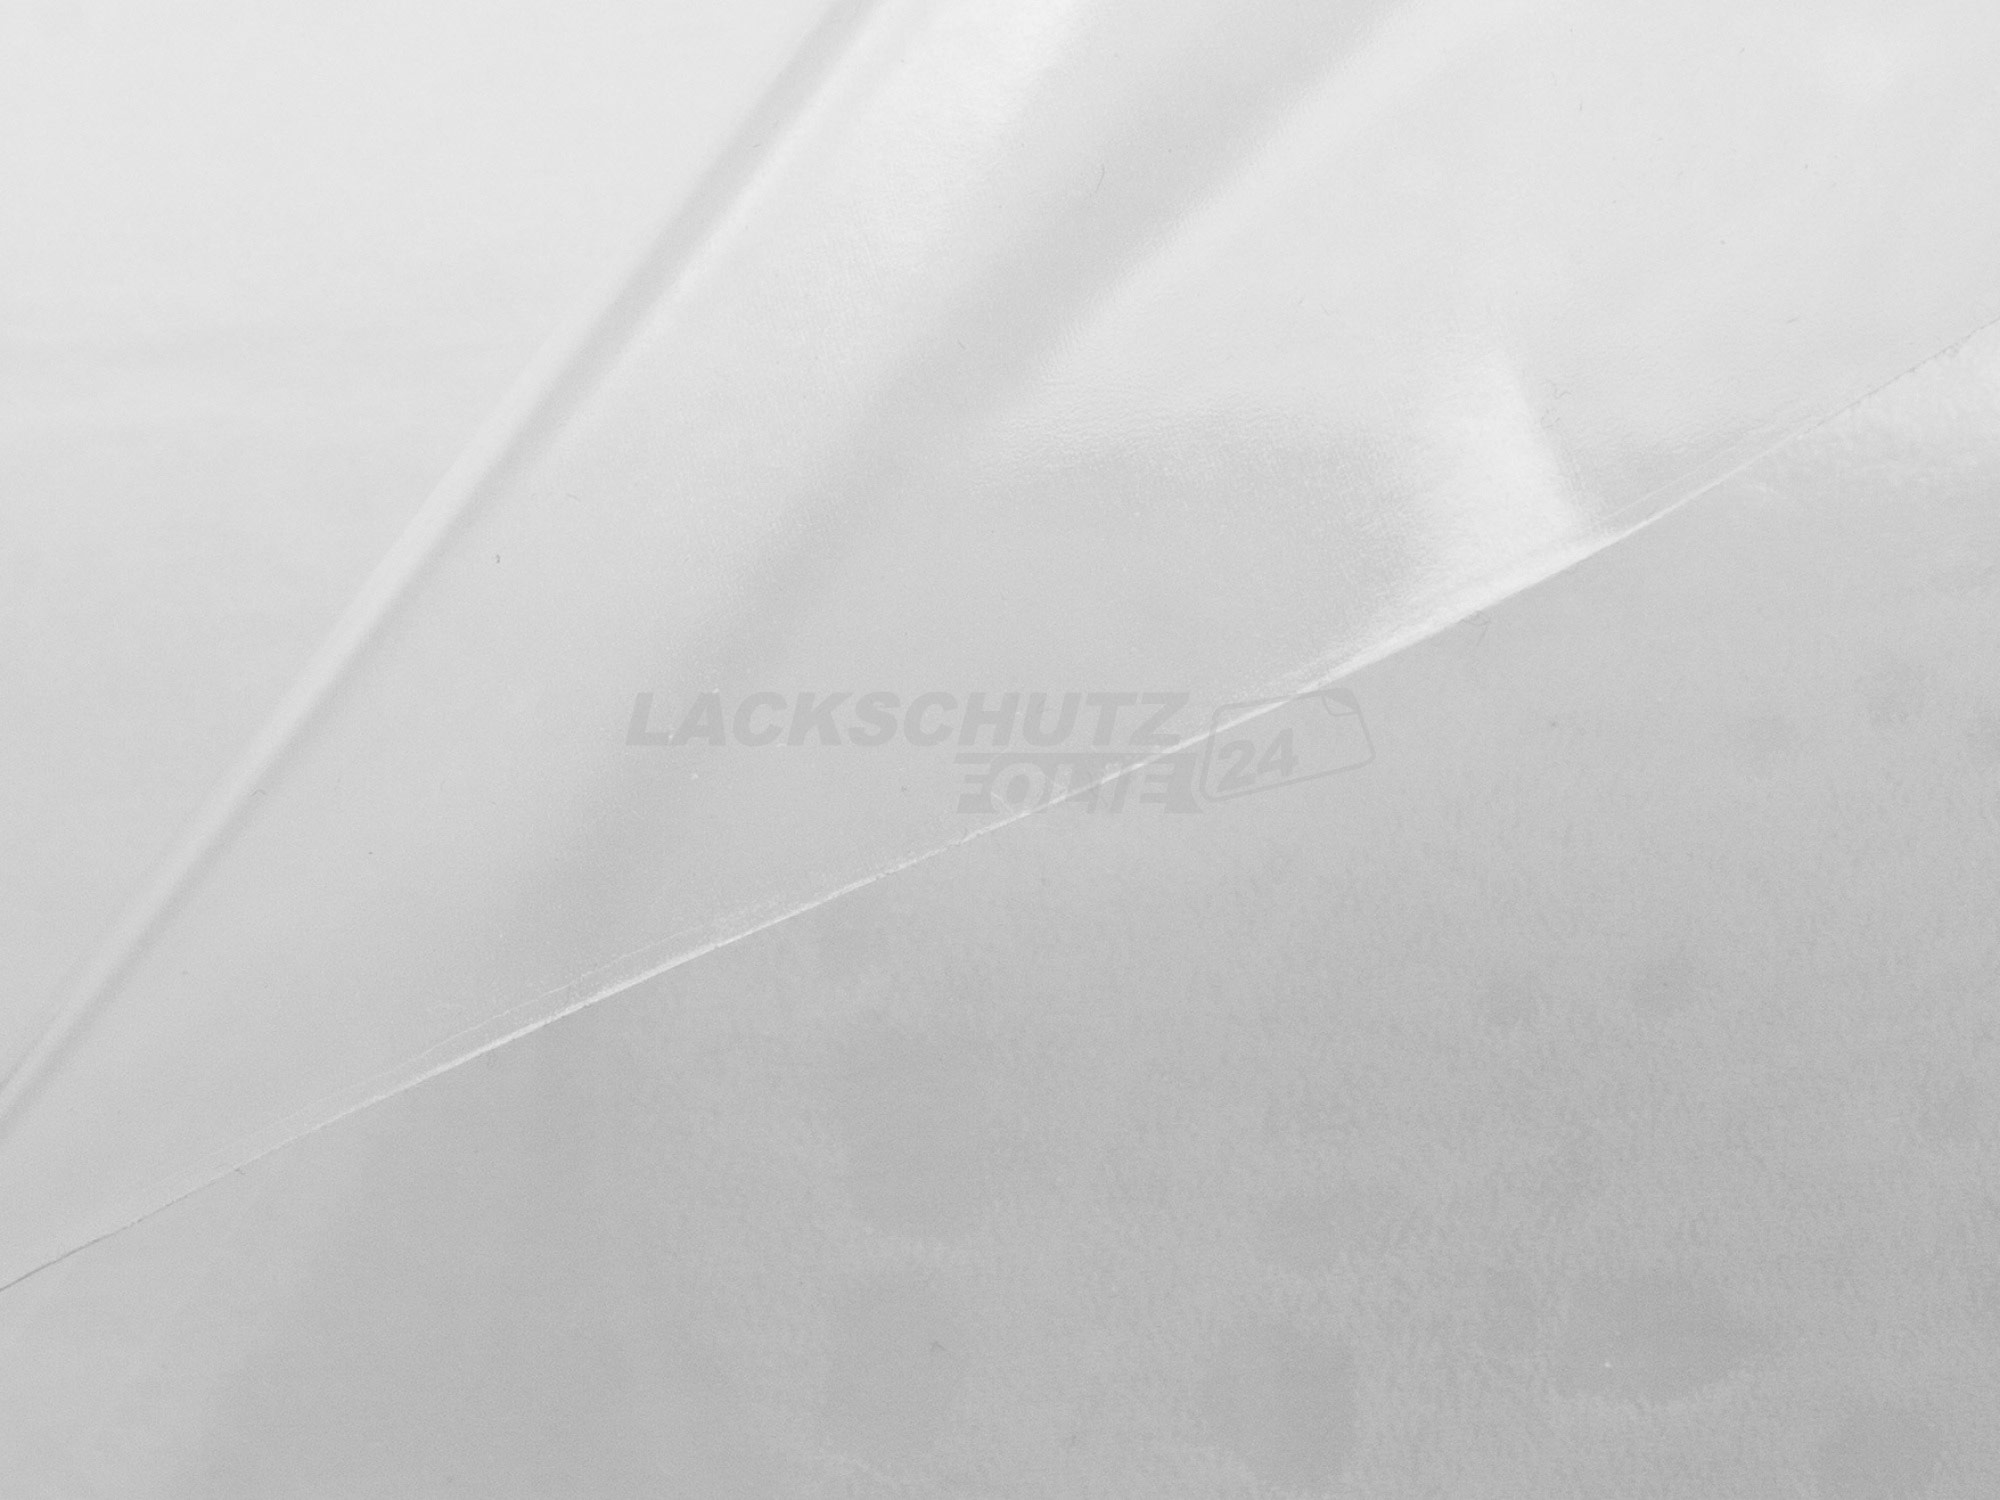 Ladekantenschutzfolie - Transparent Glatt Hochglänzend 150 µm stark für VW / Volkswagen Touran (II) Typ 5T, R-LINE, ab BJ 08/2015